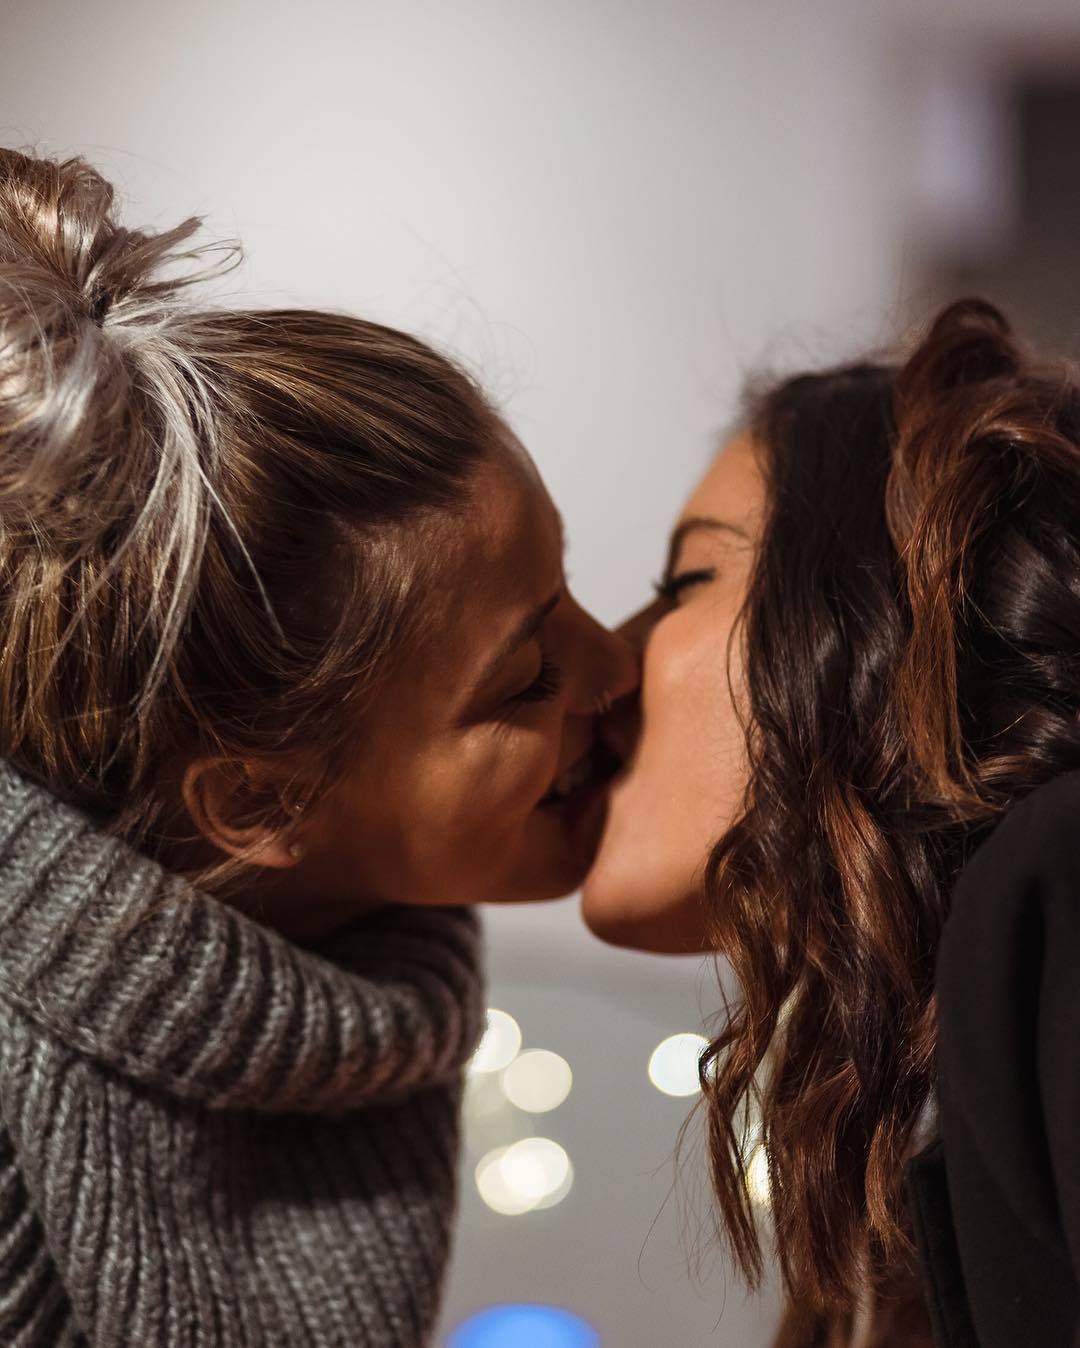 Lesbian studios. Любовь двух женщин. Поцелуй девушек. Девушки целуются. Красивый поцелуй двух девушек.